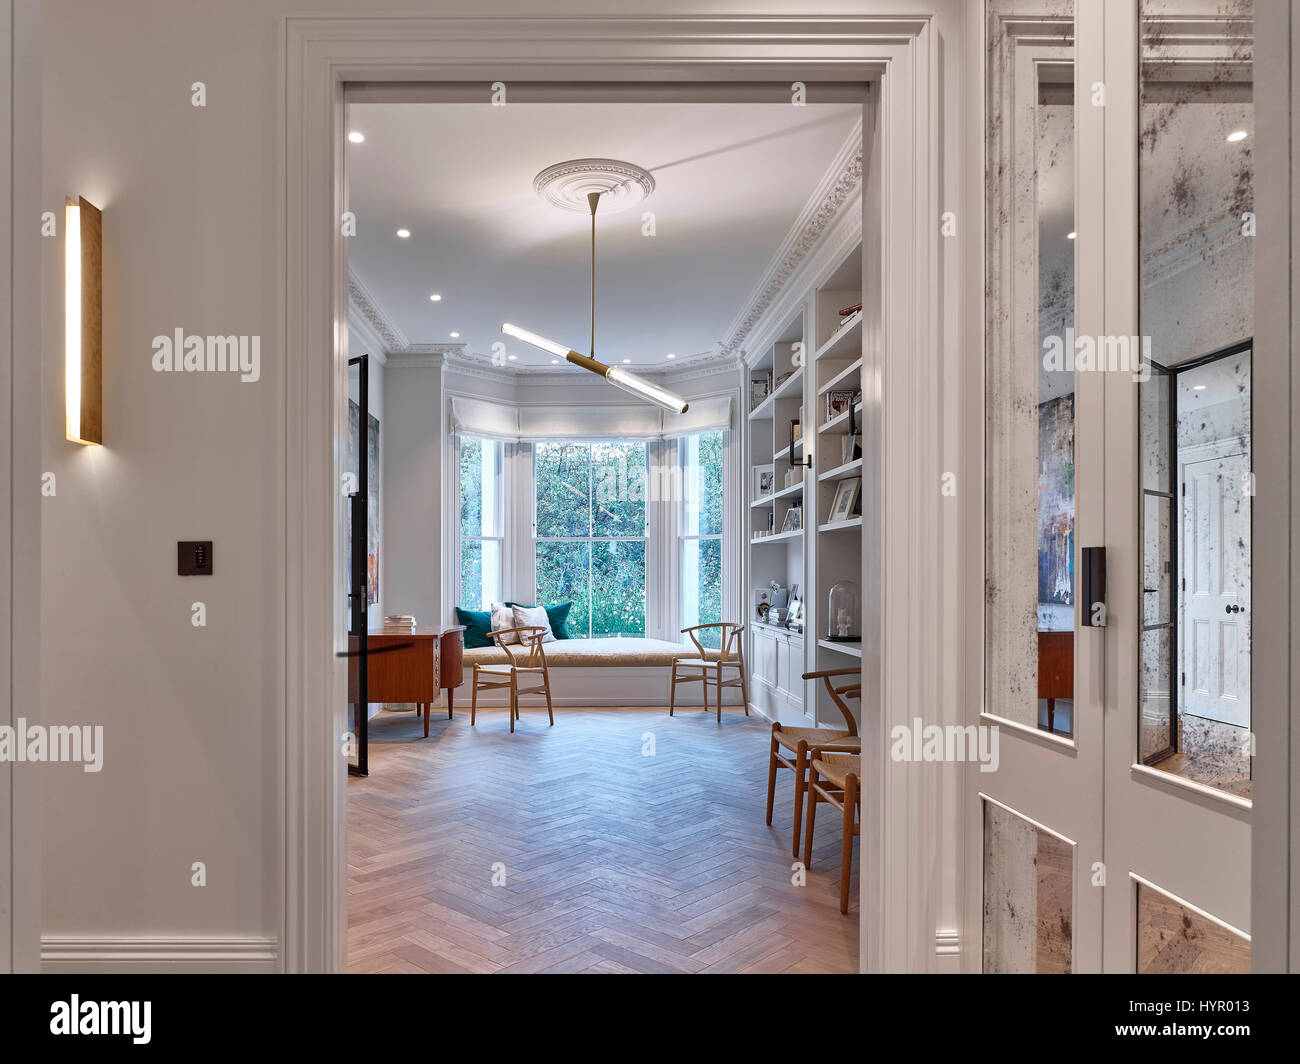 Wohnzimmer. Westlondon Familienhaus, London, Vereinigtes Königreich. Architekt: Steif + Trevillion Architekten, 2016. Stockfoto